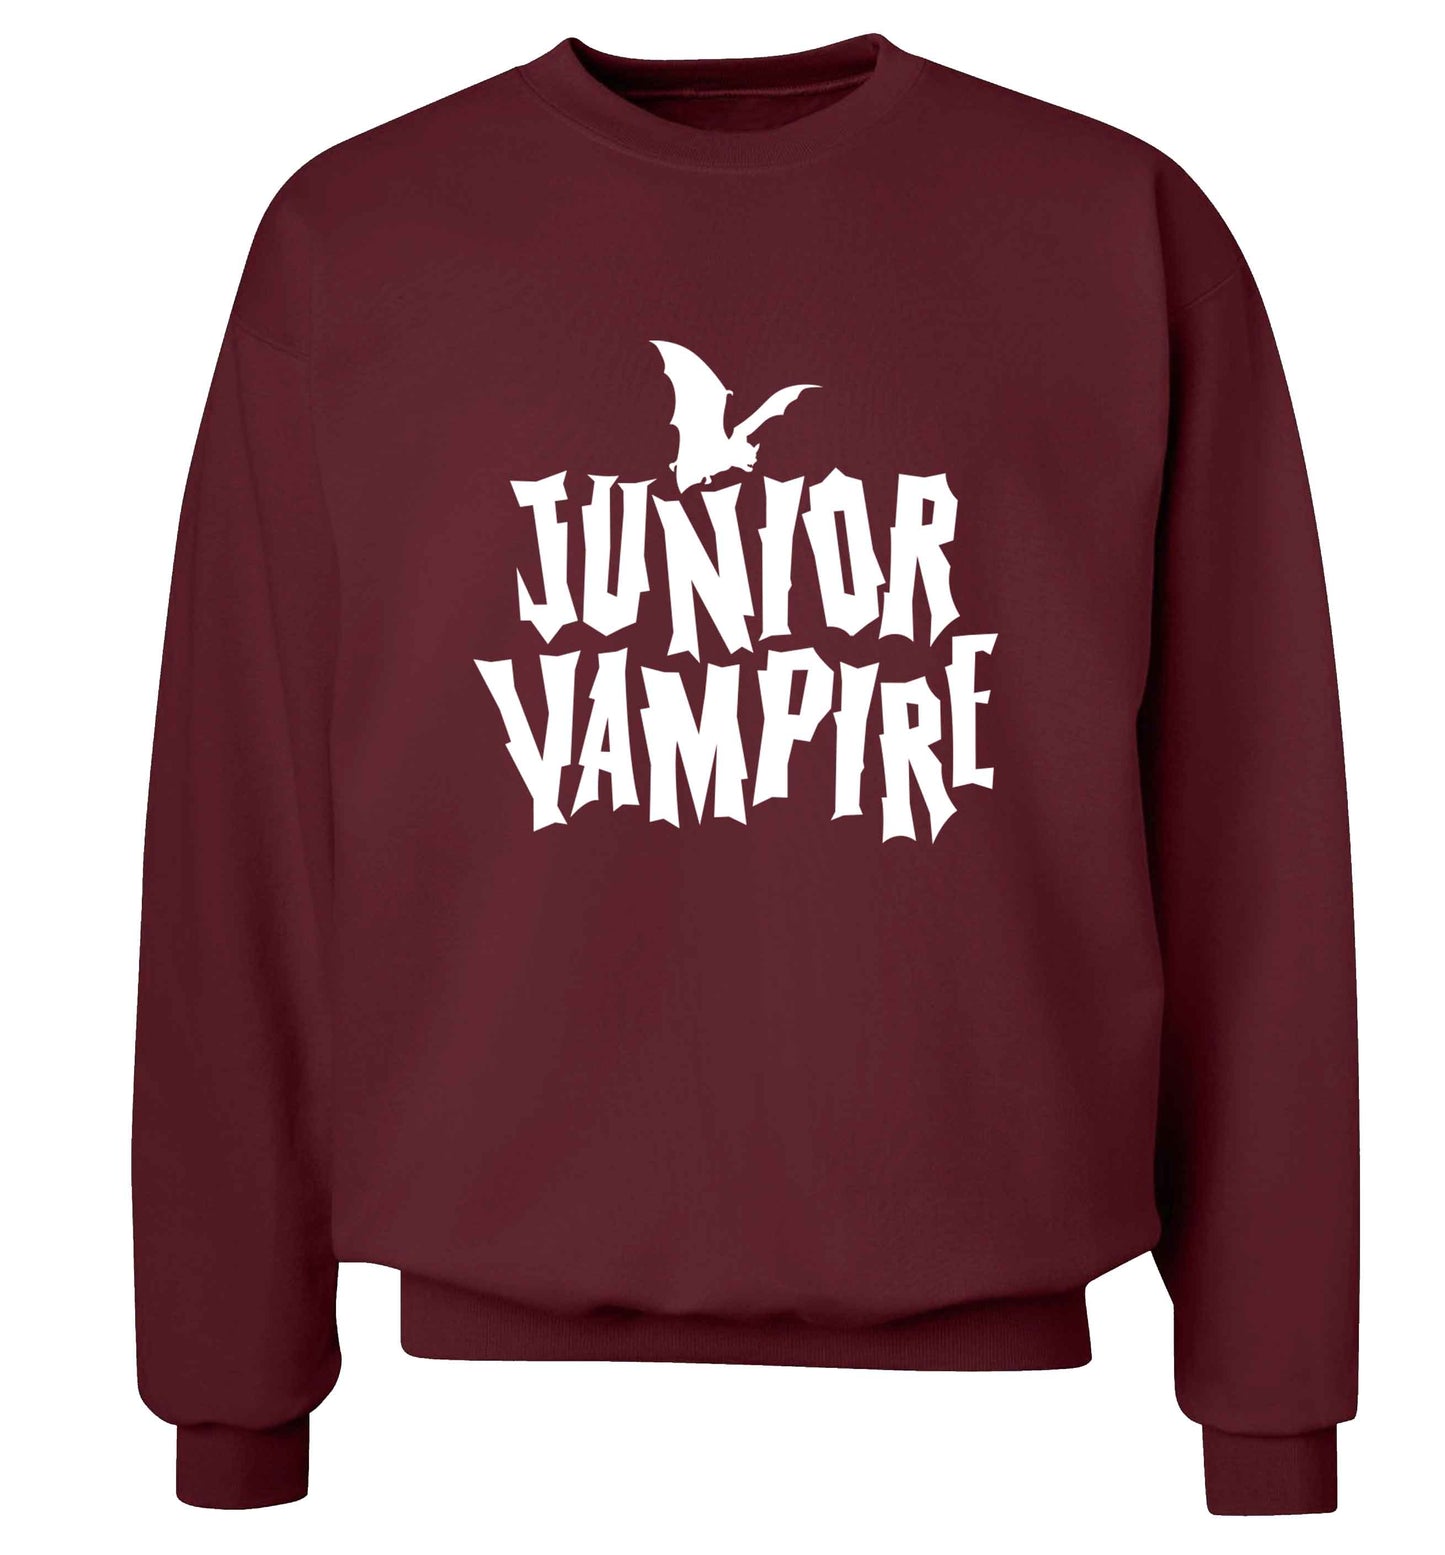 Junior vampire adult's unisex maroon sweater 2XL